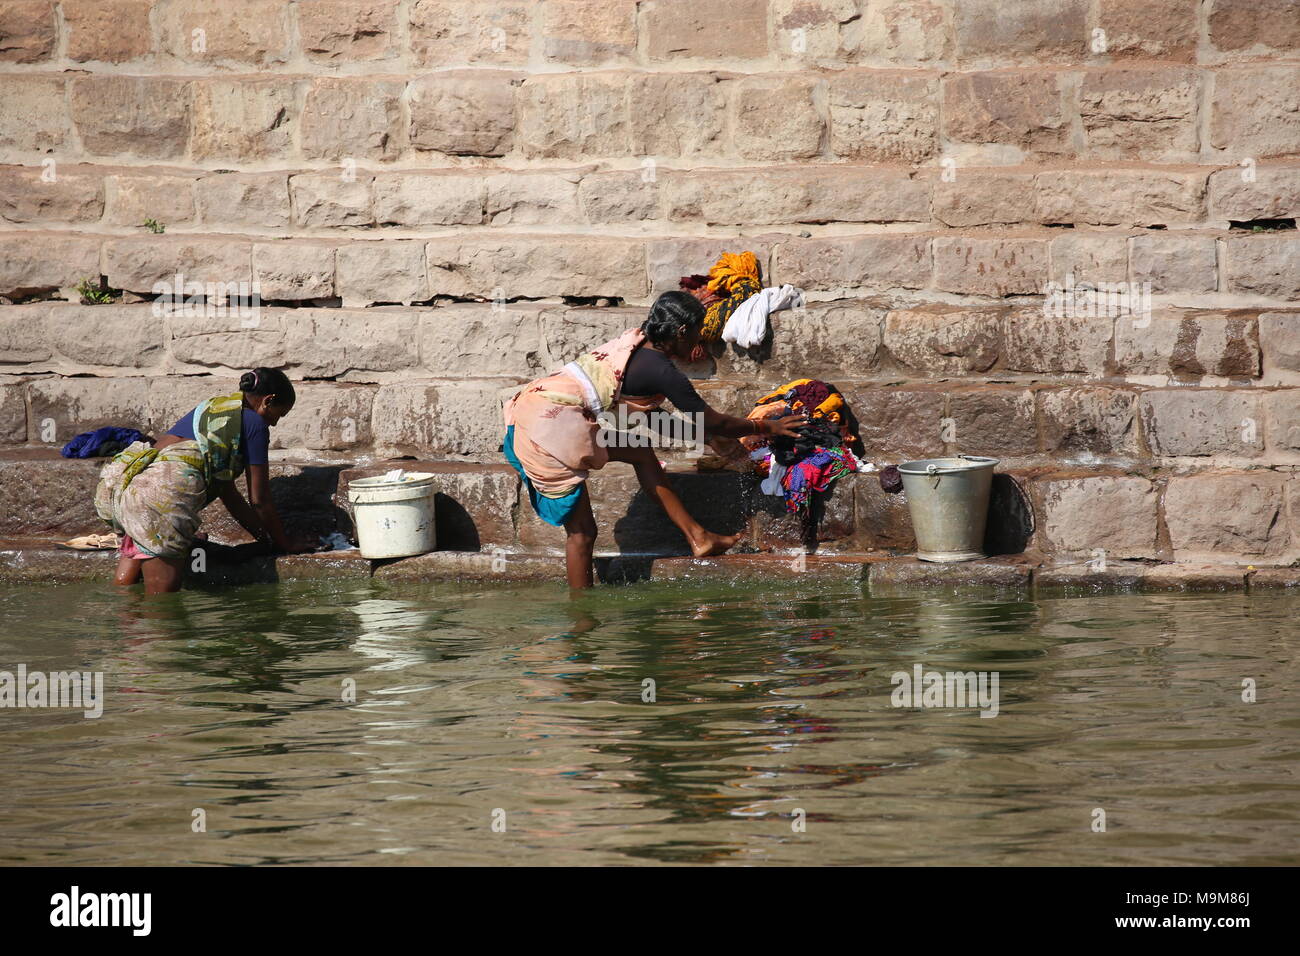 Femme indienne le lavage des vêtements et de la vaisselle sur le fleuve - inderin beim waschen von Kleidung und geschirr am fluss Banque D'Images